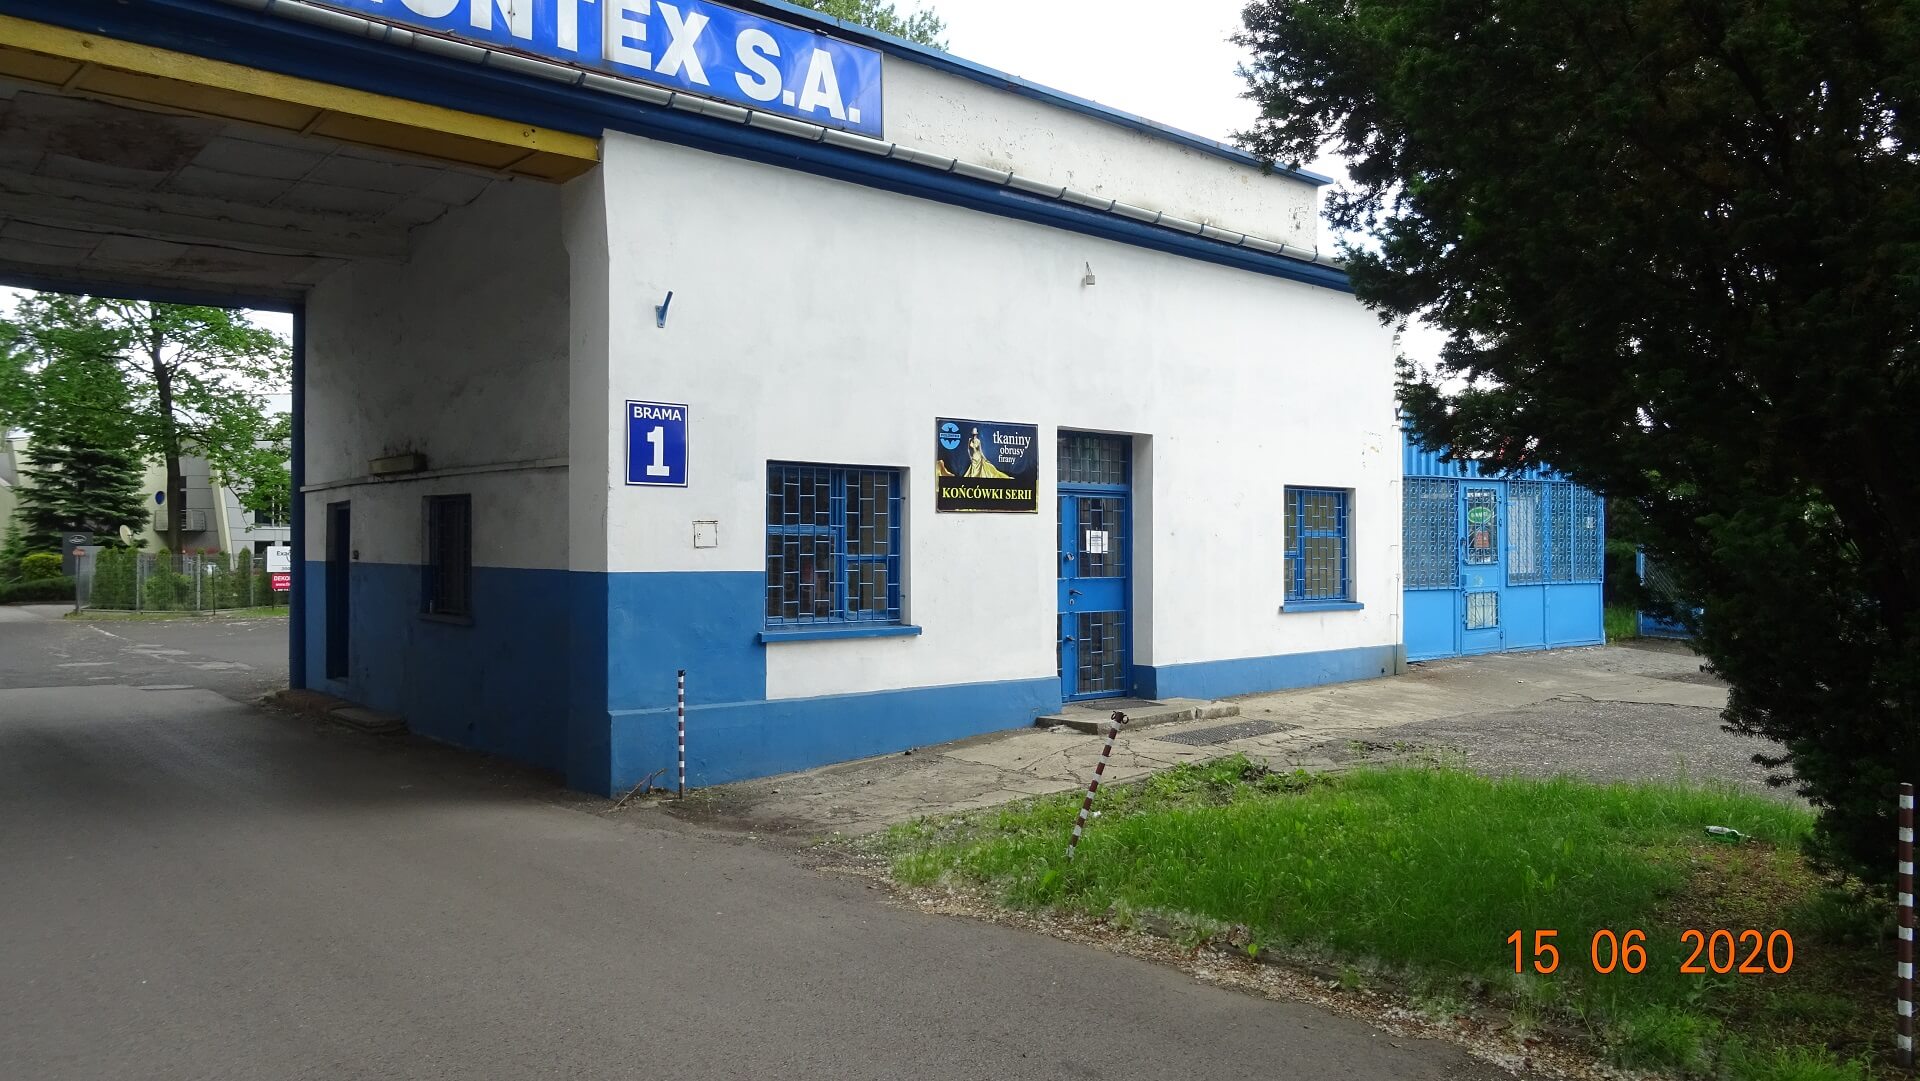 Producent firanek i tkanin dekoracyjnych - Polontex | Częstochowa